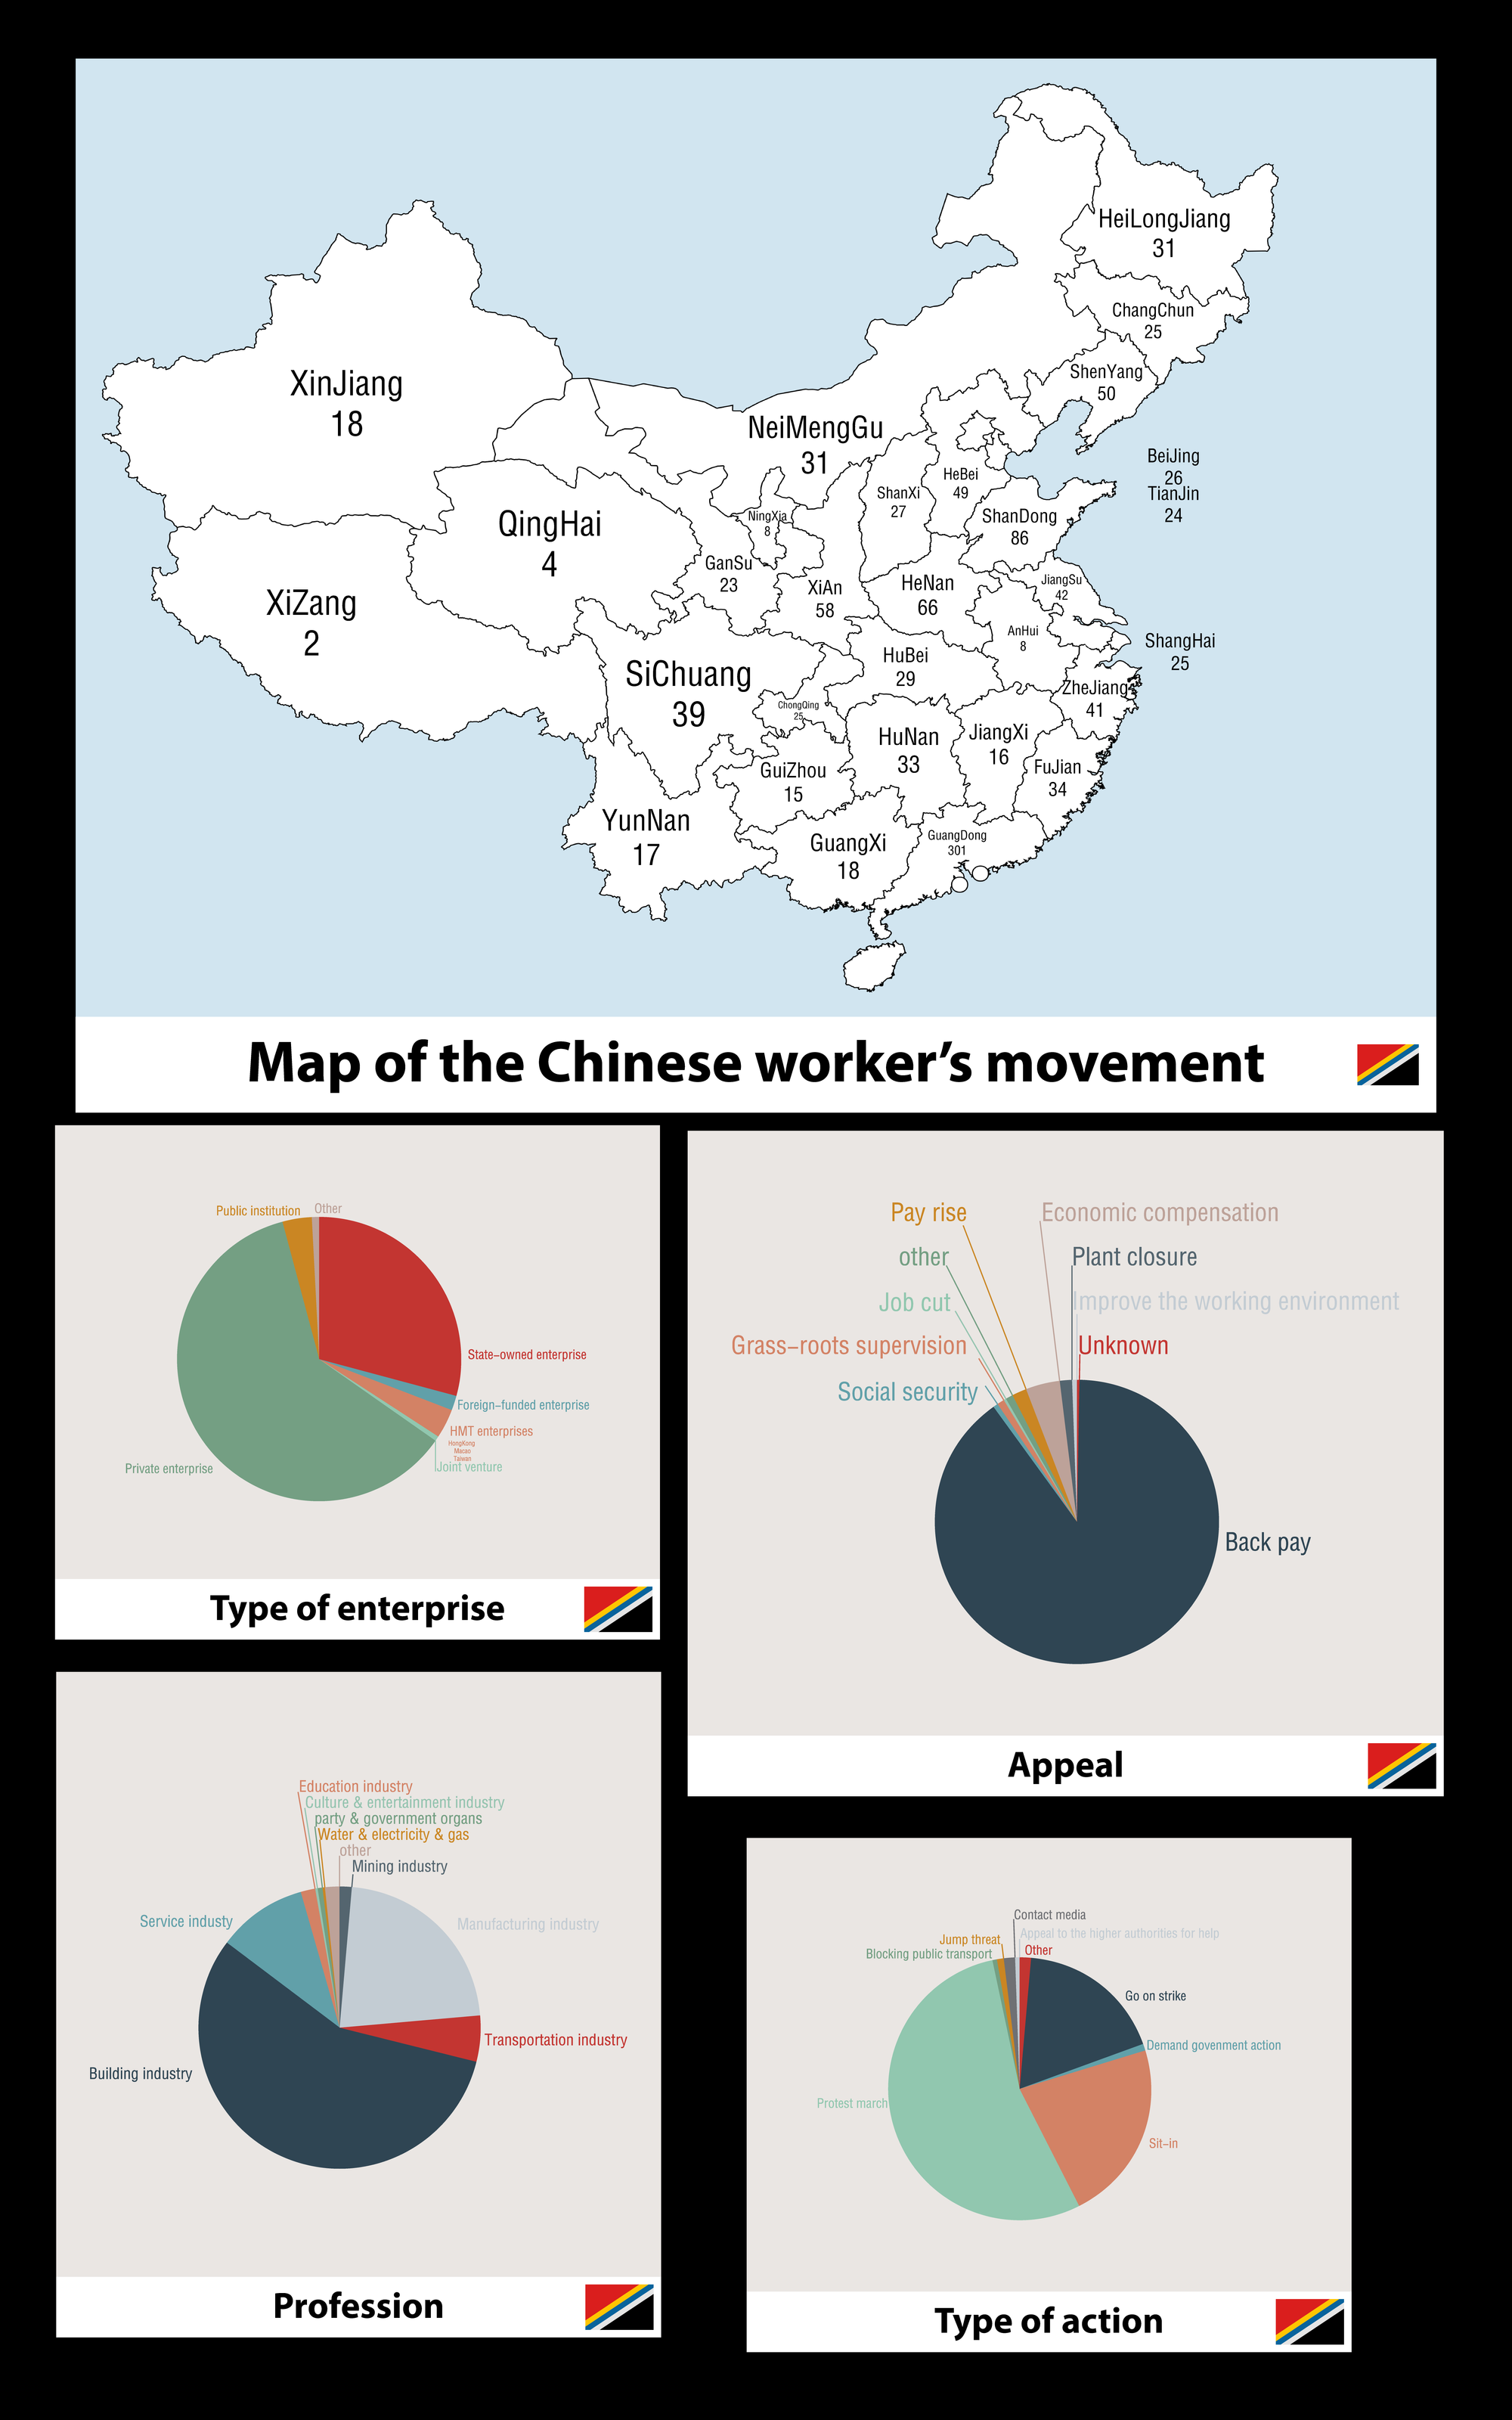 Rapport sur le mouvement ouvrier chinois | Groupe pro-AIT en Chine